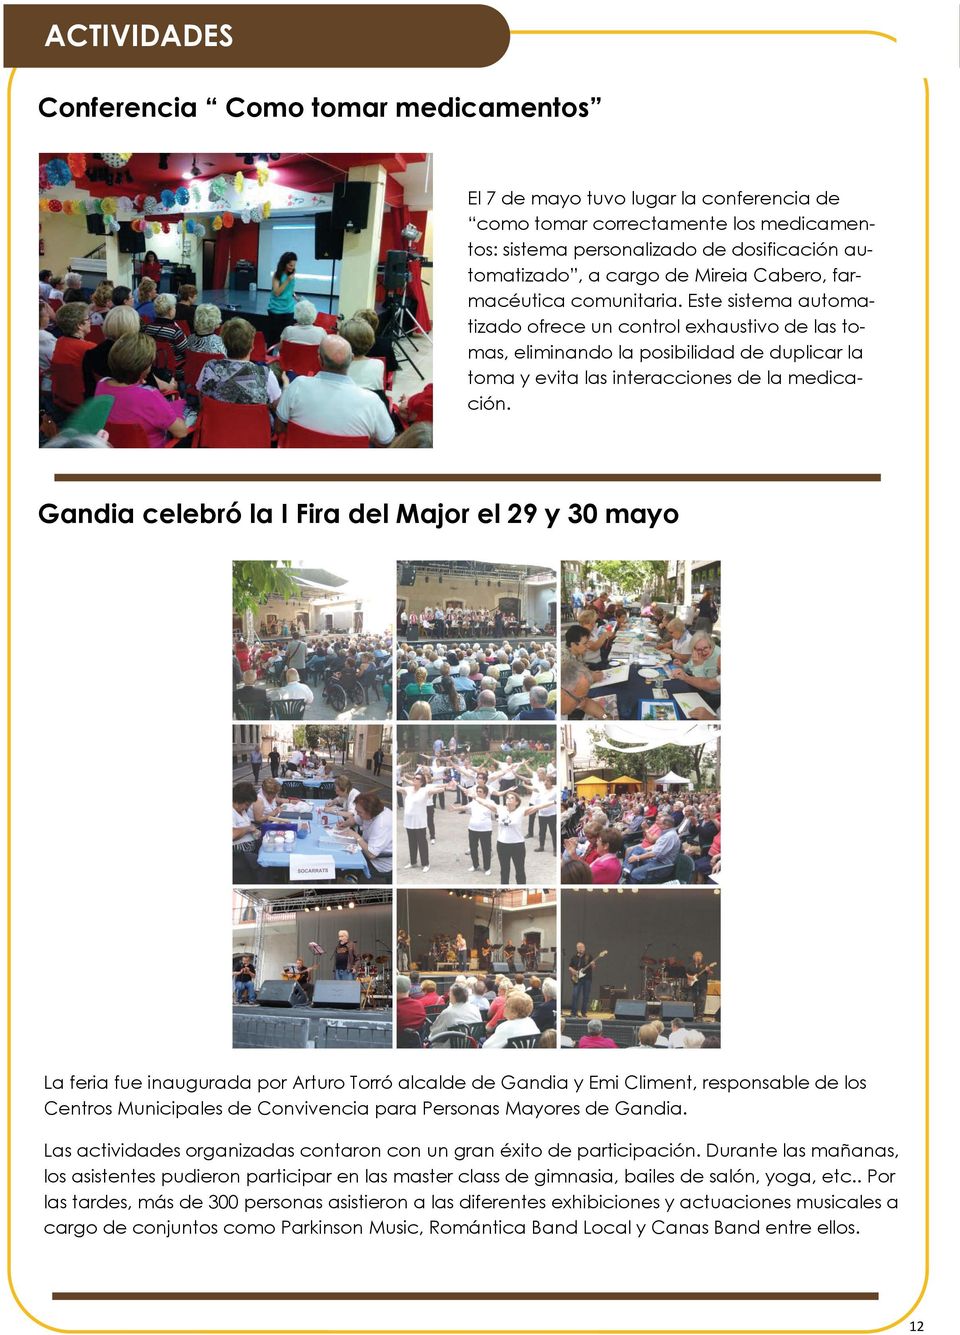 Gandia celebró la I Fira del Major el 29 y 30 mayo La feria fue inaugurada por Arturo Torró alcalde de Gandia y Emi Climent, responsable de los Centros Municipales de Convivencia para Personas